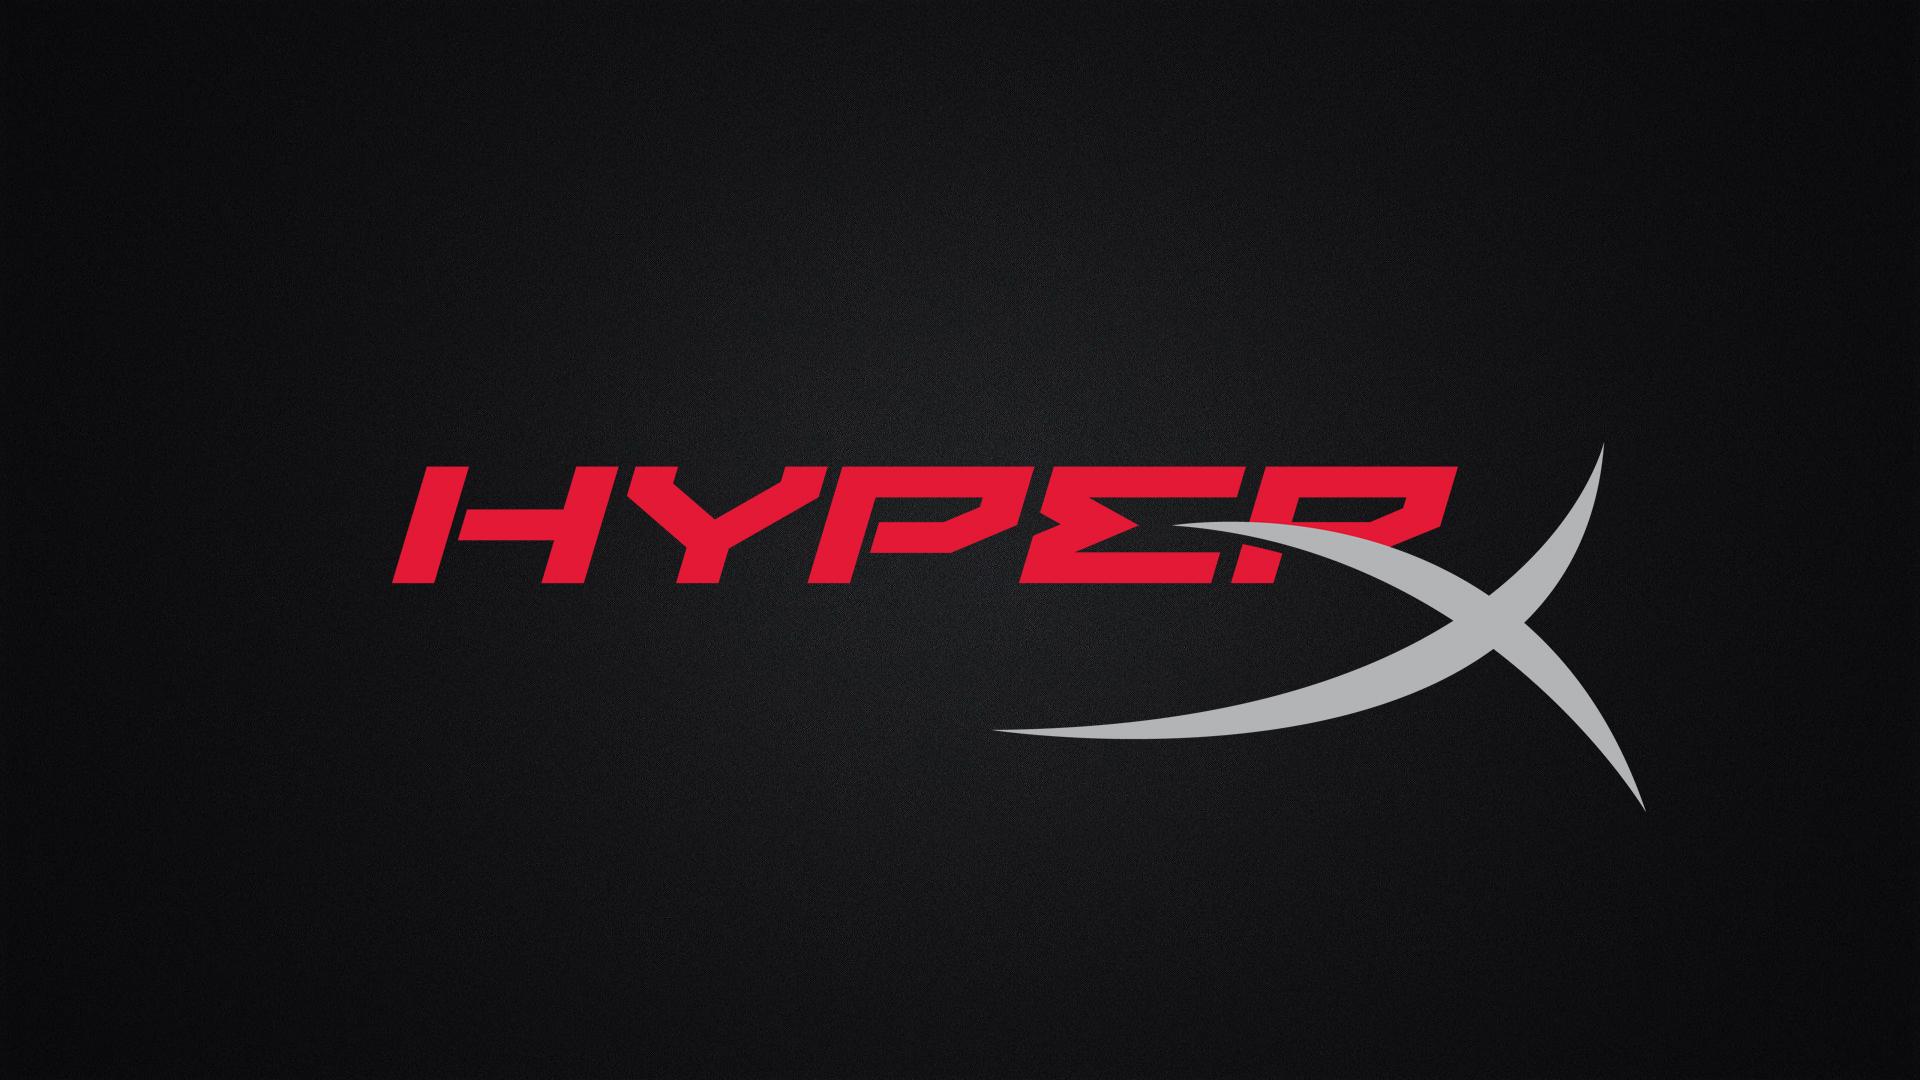 شركة HP تكمل استحواذها على العلامة التجارية HyperX!